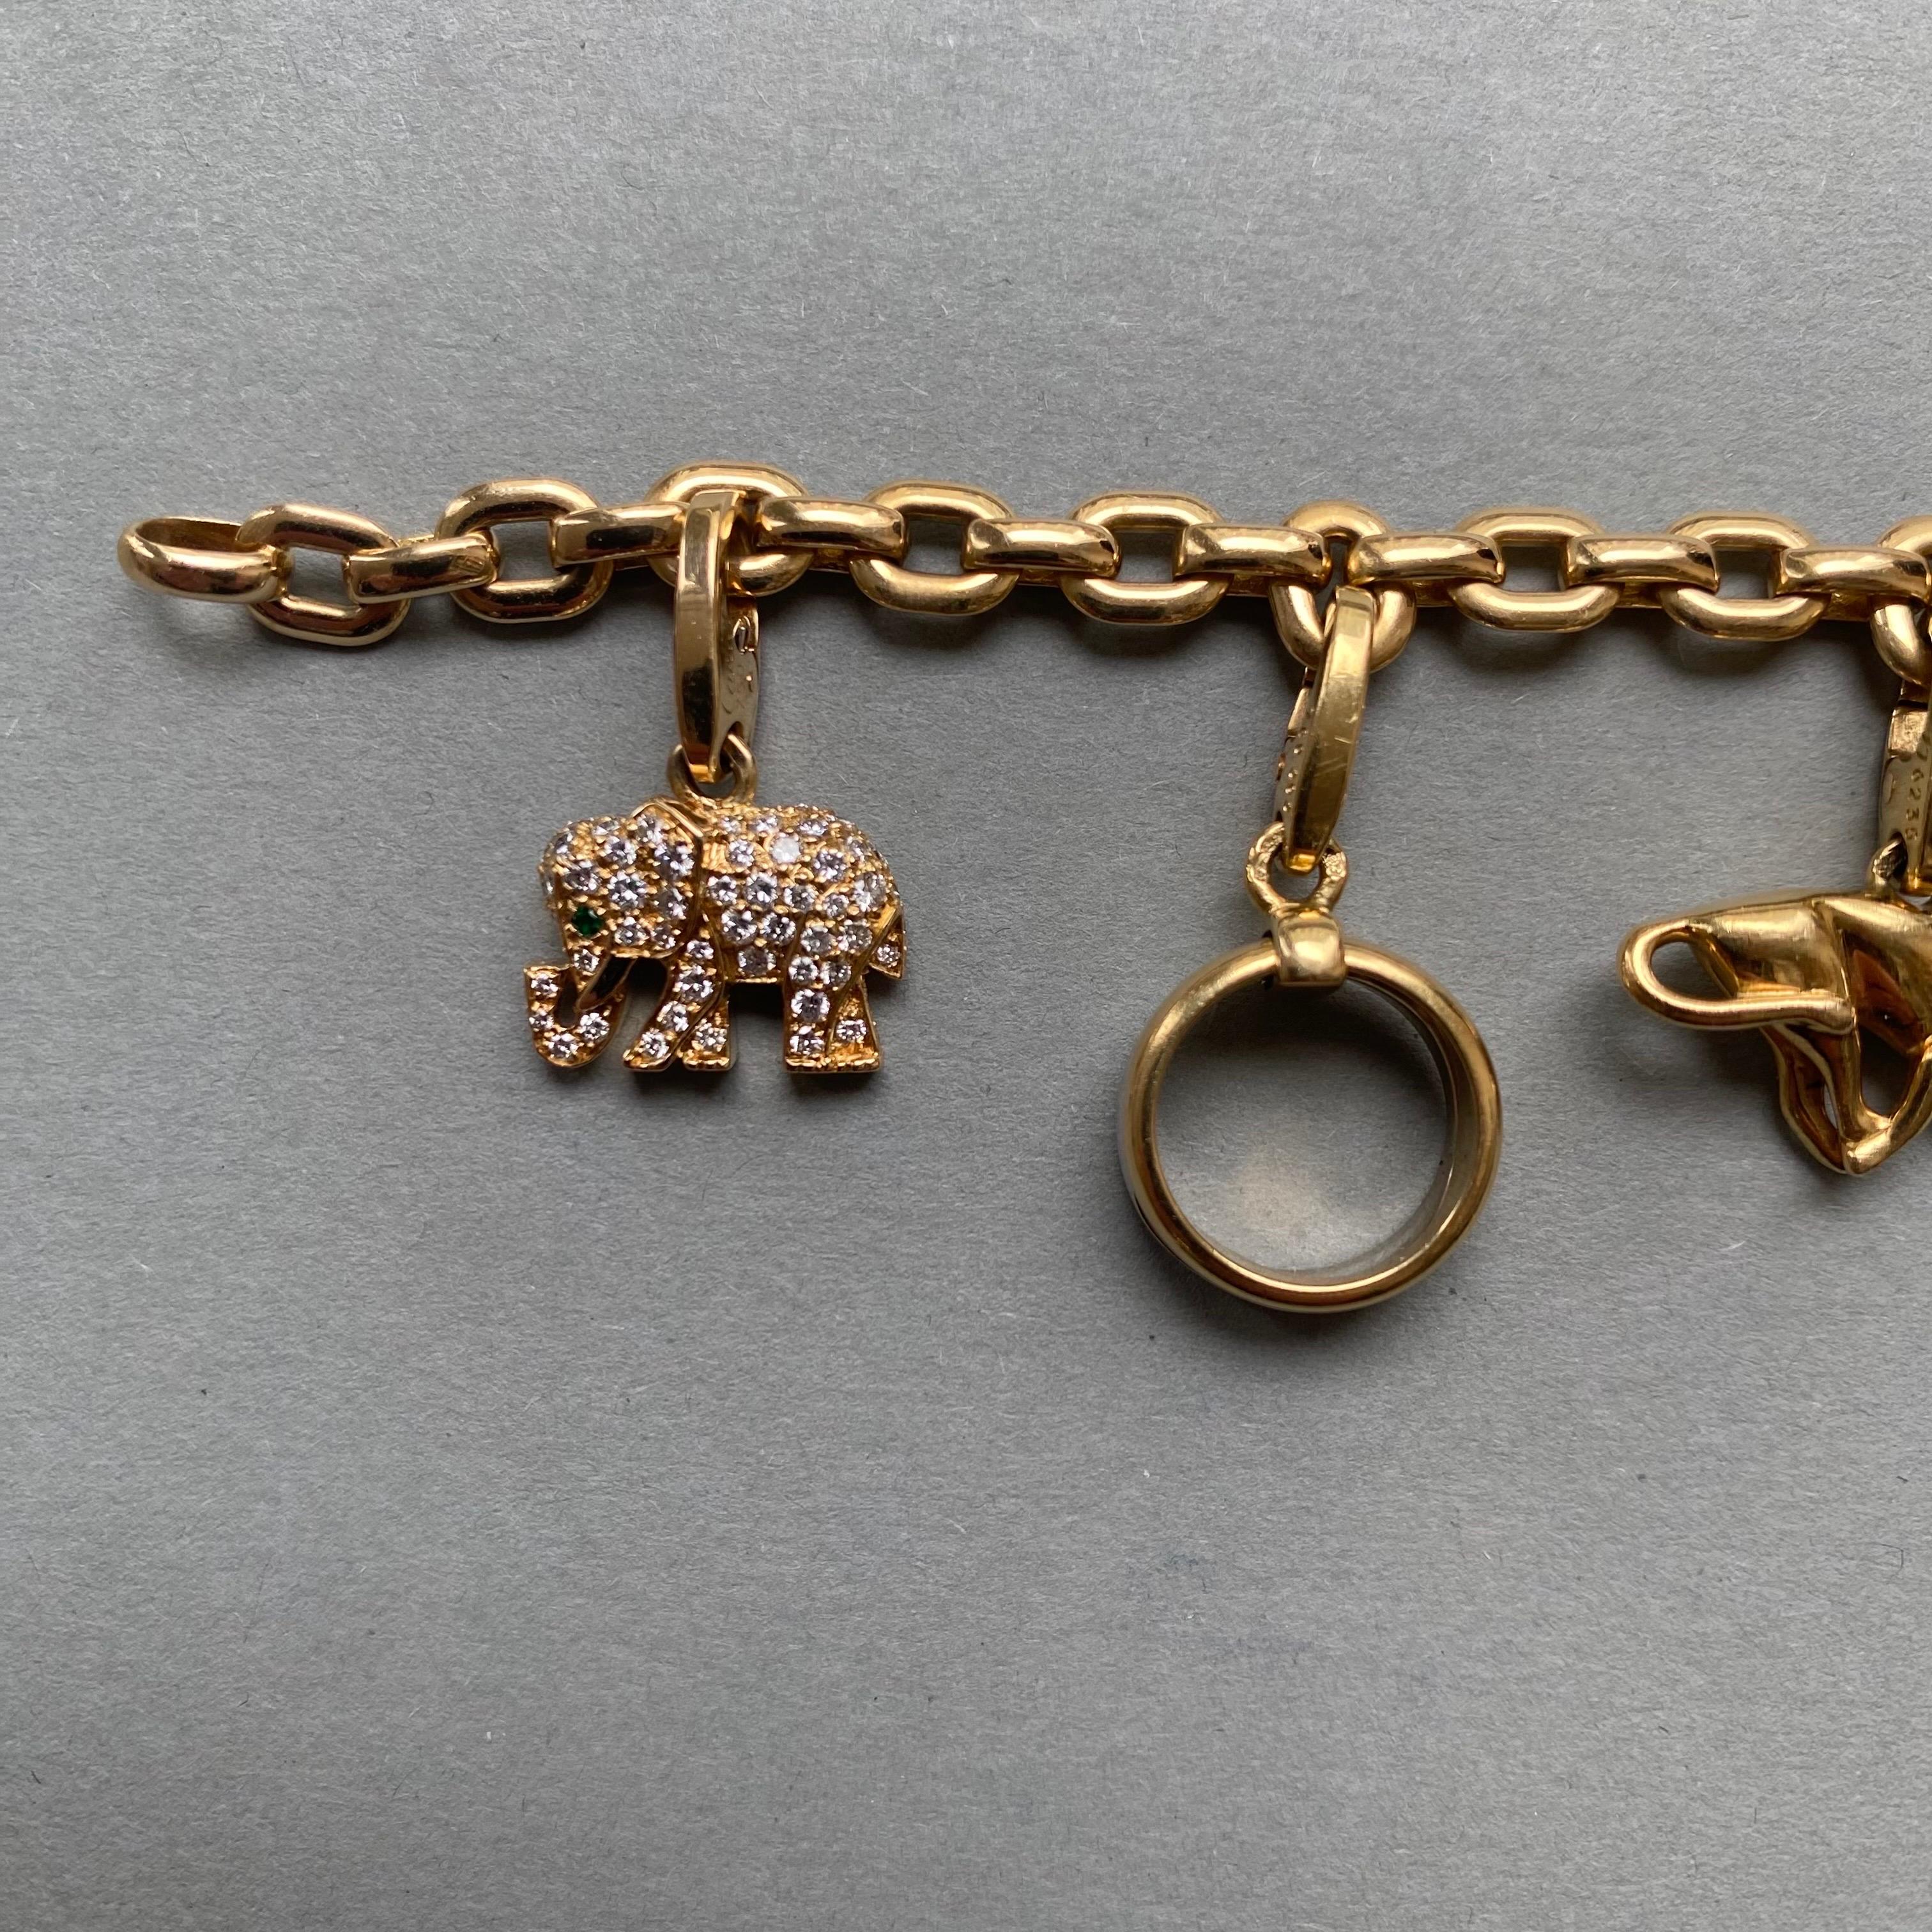 Un bracelet Cartier en or 18 carats (signé et numéroté) avec 7 breloques détachables signées et numérotées de Cartier (la breloque de l'amour et l'éléphant et le bracelet sont accompagnés de leurs certificats de Cartier).

poids : 42,7